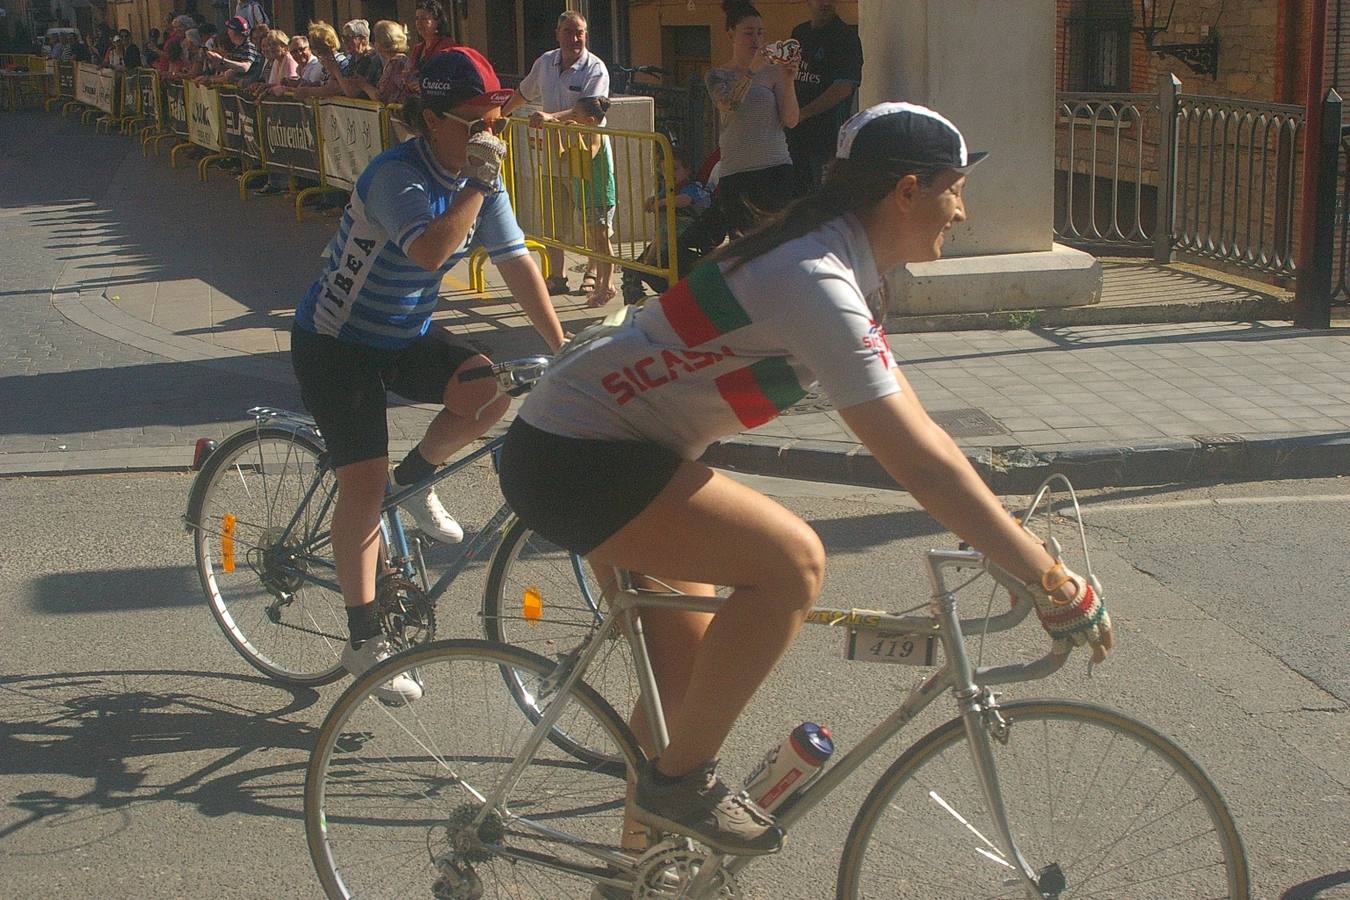 Cenicero acogió la Eroica Hispania, una prueba de ciclismo clásico en la que los aficionados a esta modalidad de ciclismo recorrieron diferentes trayectos por la Rioja Alta; disfrutando del paisaje, el vino, la cultura y la gastronomía